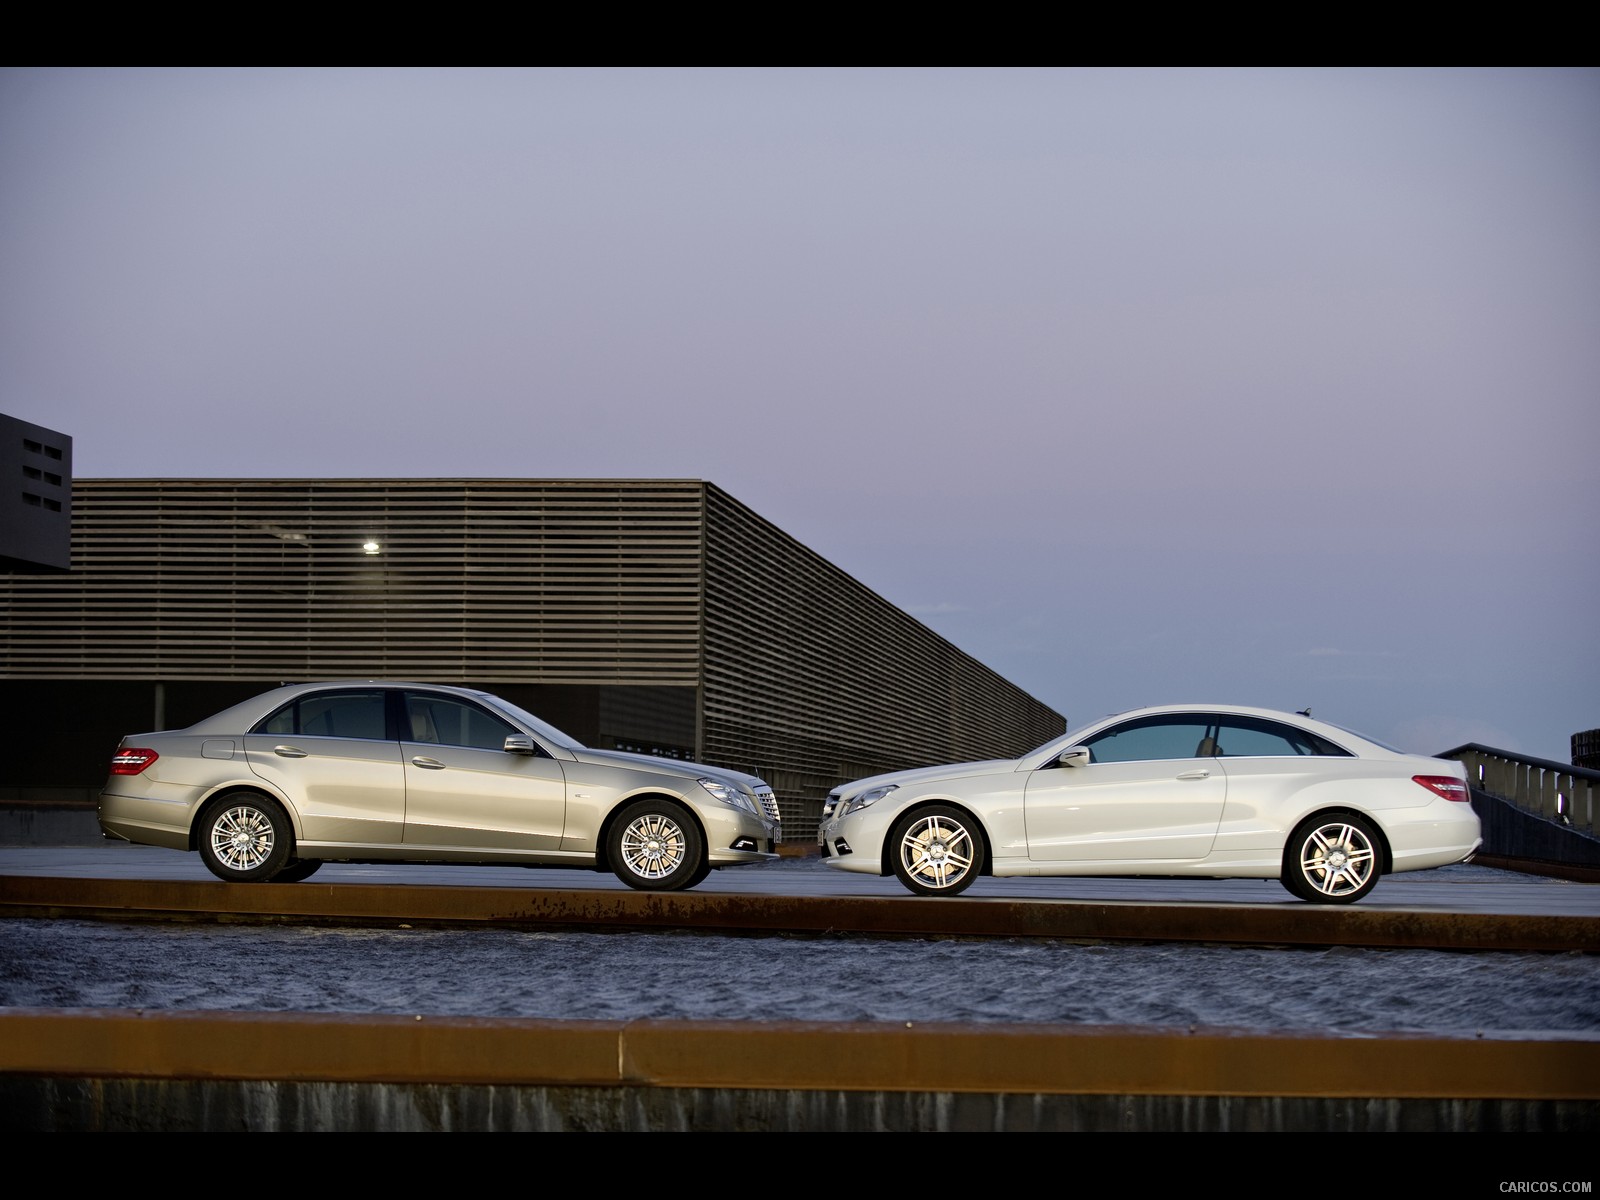 2010 Mercedes-Benz E-Class Sedan - Duo - , #97 of 261